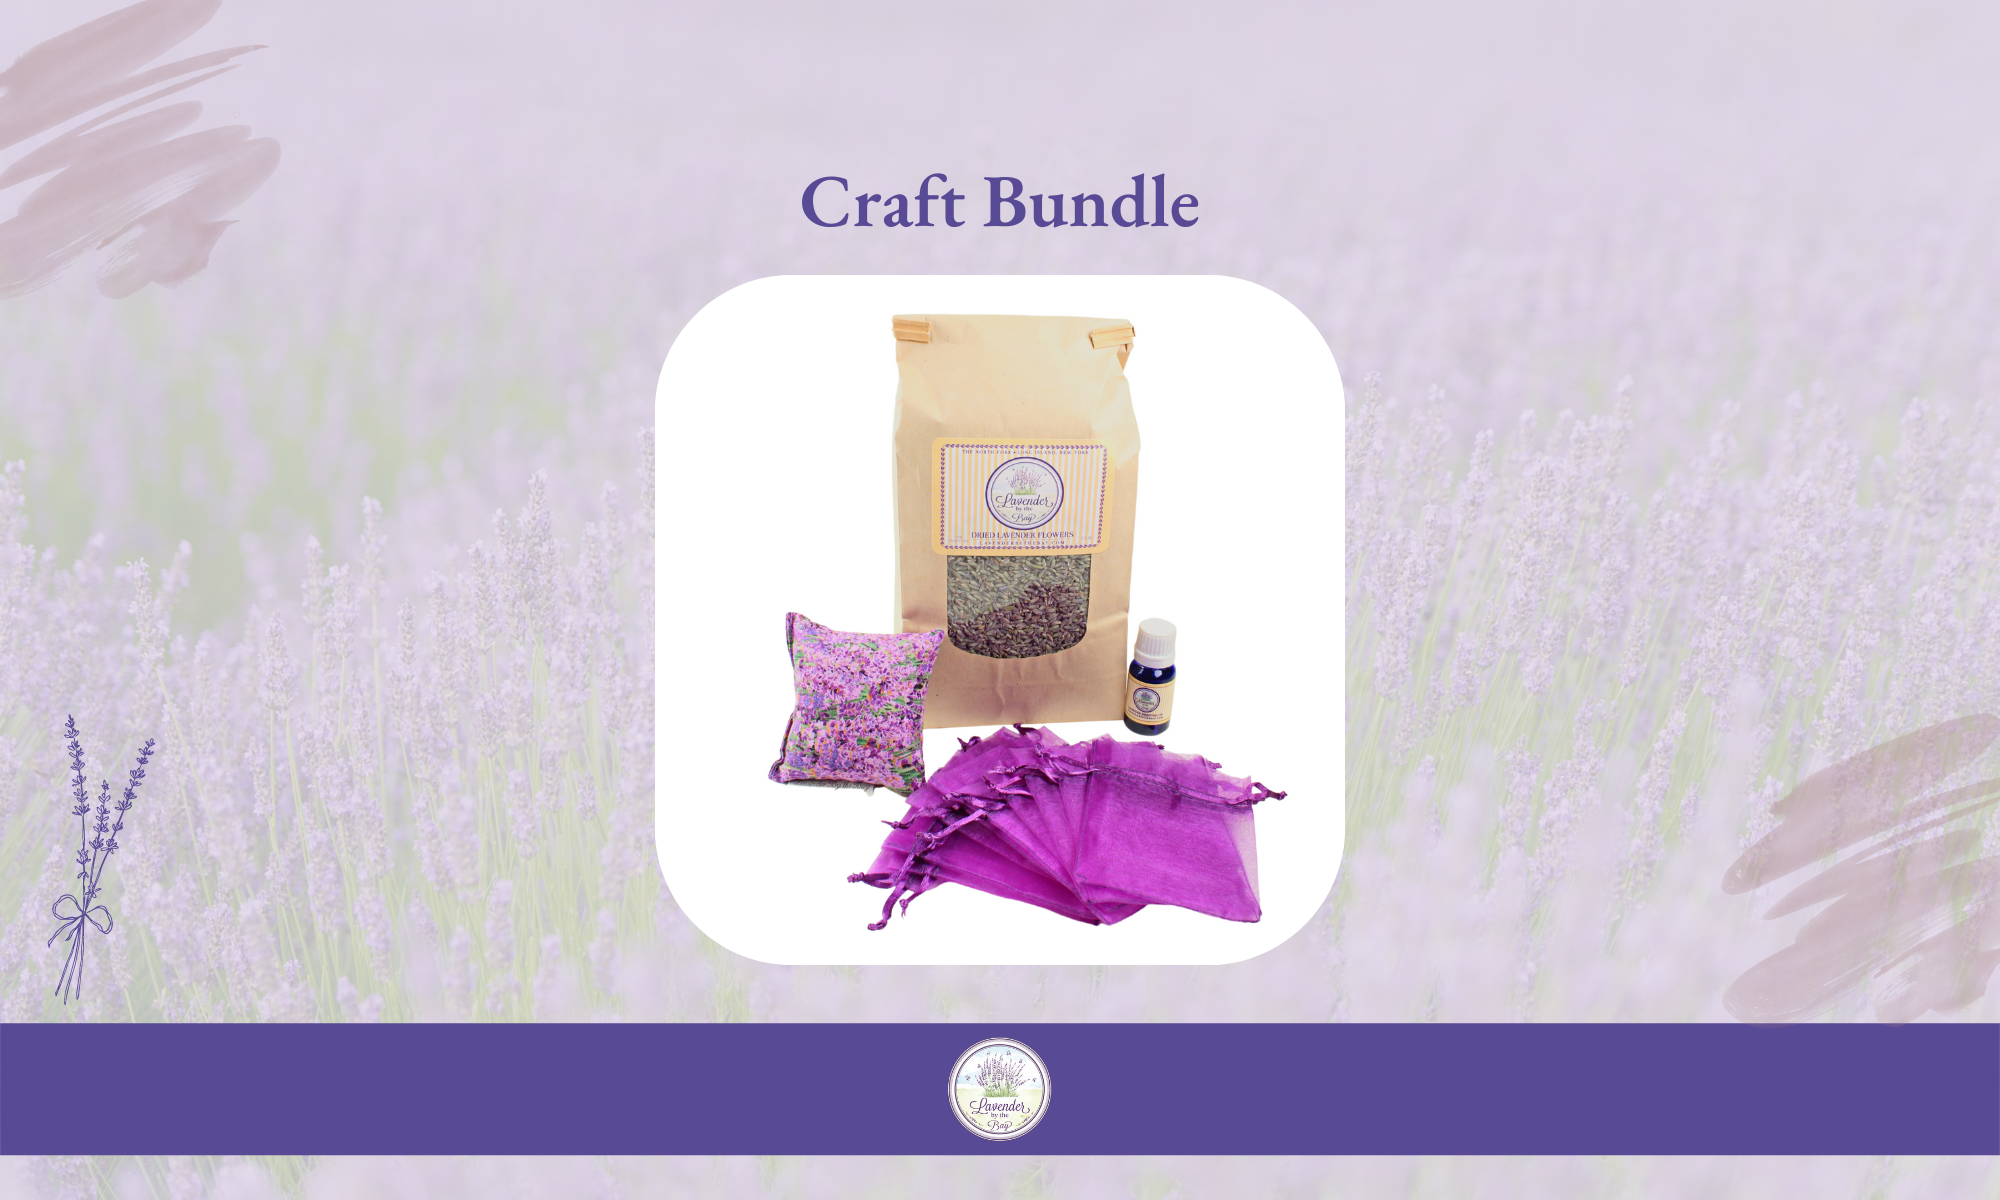 Lavender Craft Set | DIY Lavender Sachet Gift Bundle from Lavender by the Bay